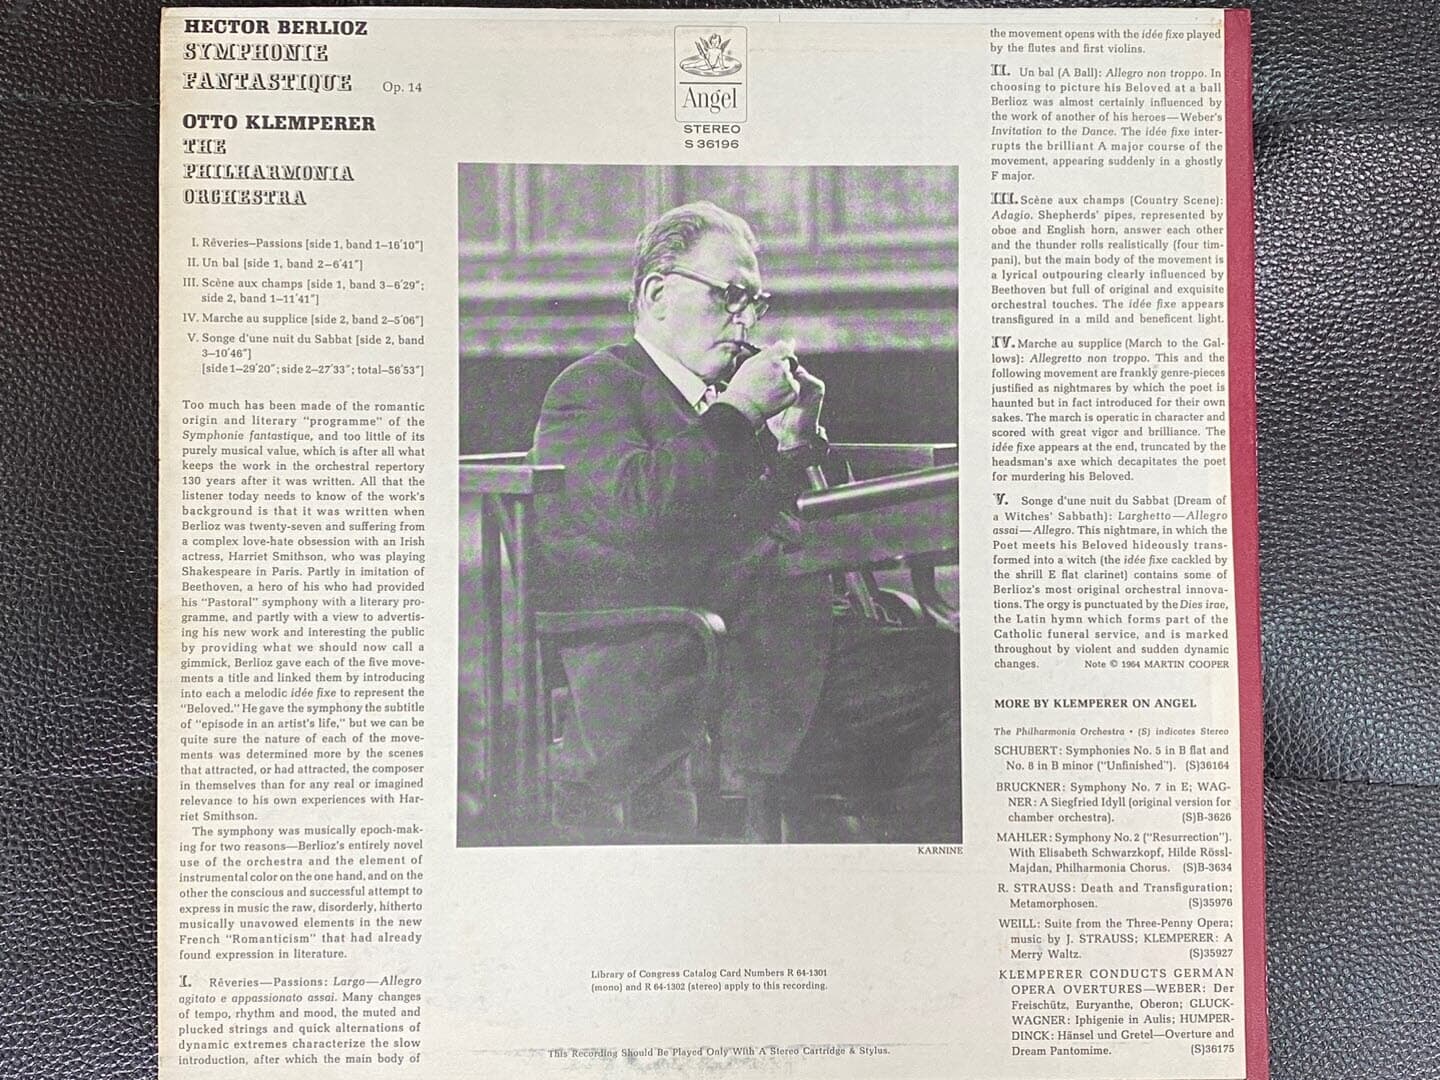 [LP] 오토 클렘페러 - Otto Klemperer - Berlioz Symphonie Fantastique Op.14 LP [U.S반]